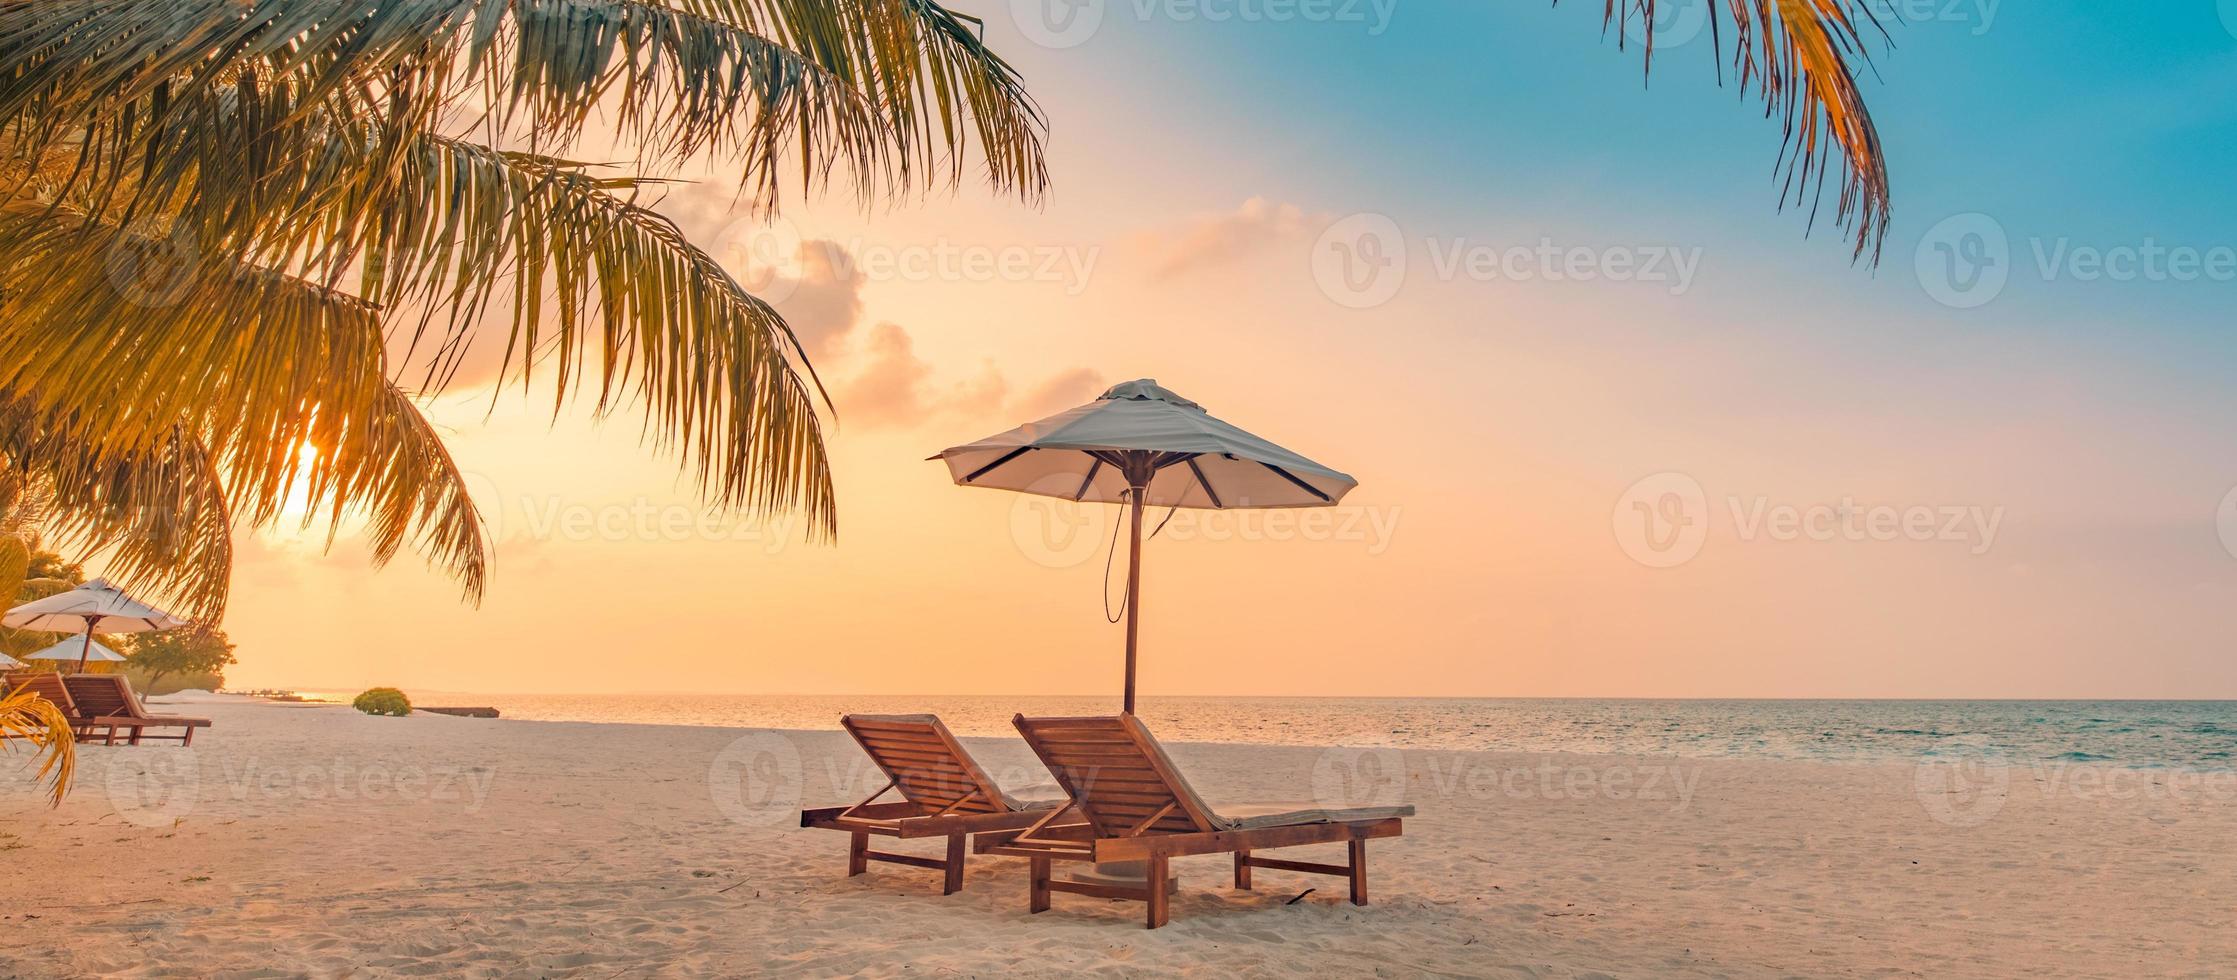 incredibile spiaggia romantica. sedie sulla spiaggia di sabbia vicino al mare. concetto di vacanza estiva per il turismo. paesaggio dell'isola tropicale. tranquillo paesaggio costiero, relax orizzonte balneare, foglie di palma foto